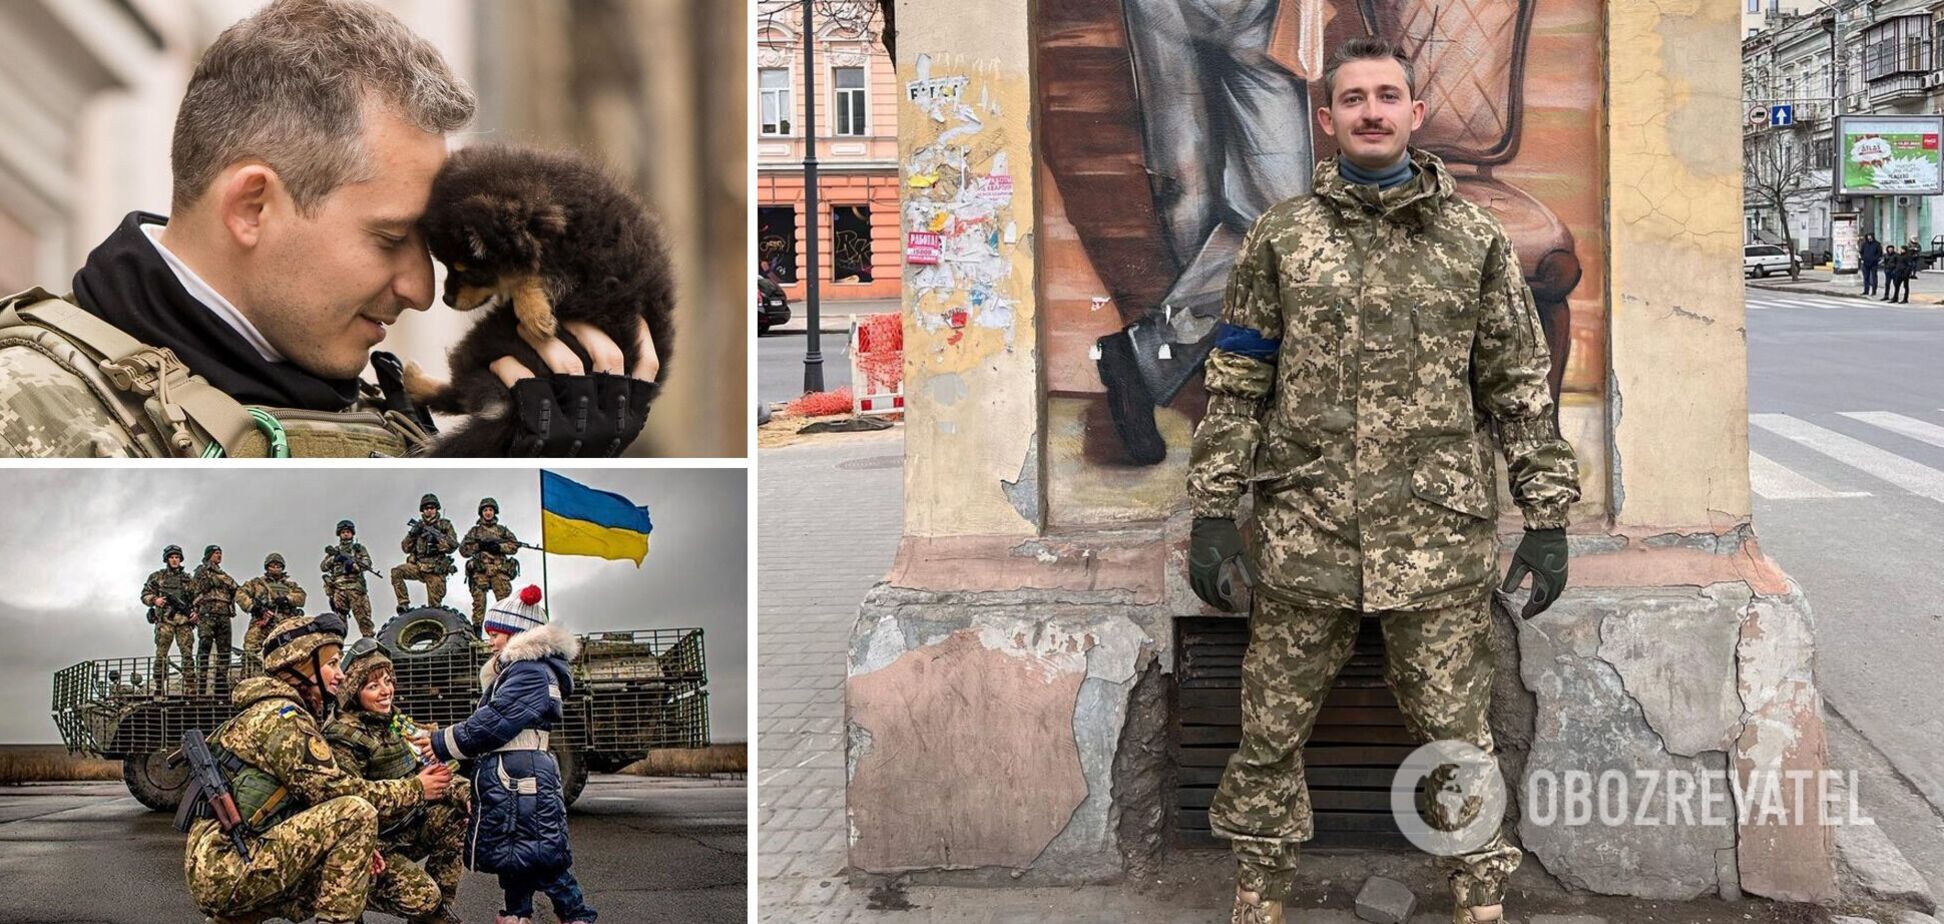 Коля Серга об украинской армии: это 'несущая стена' и стержень, вокруг которого сегодня формируется нация